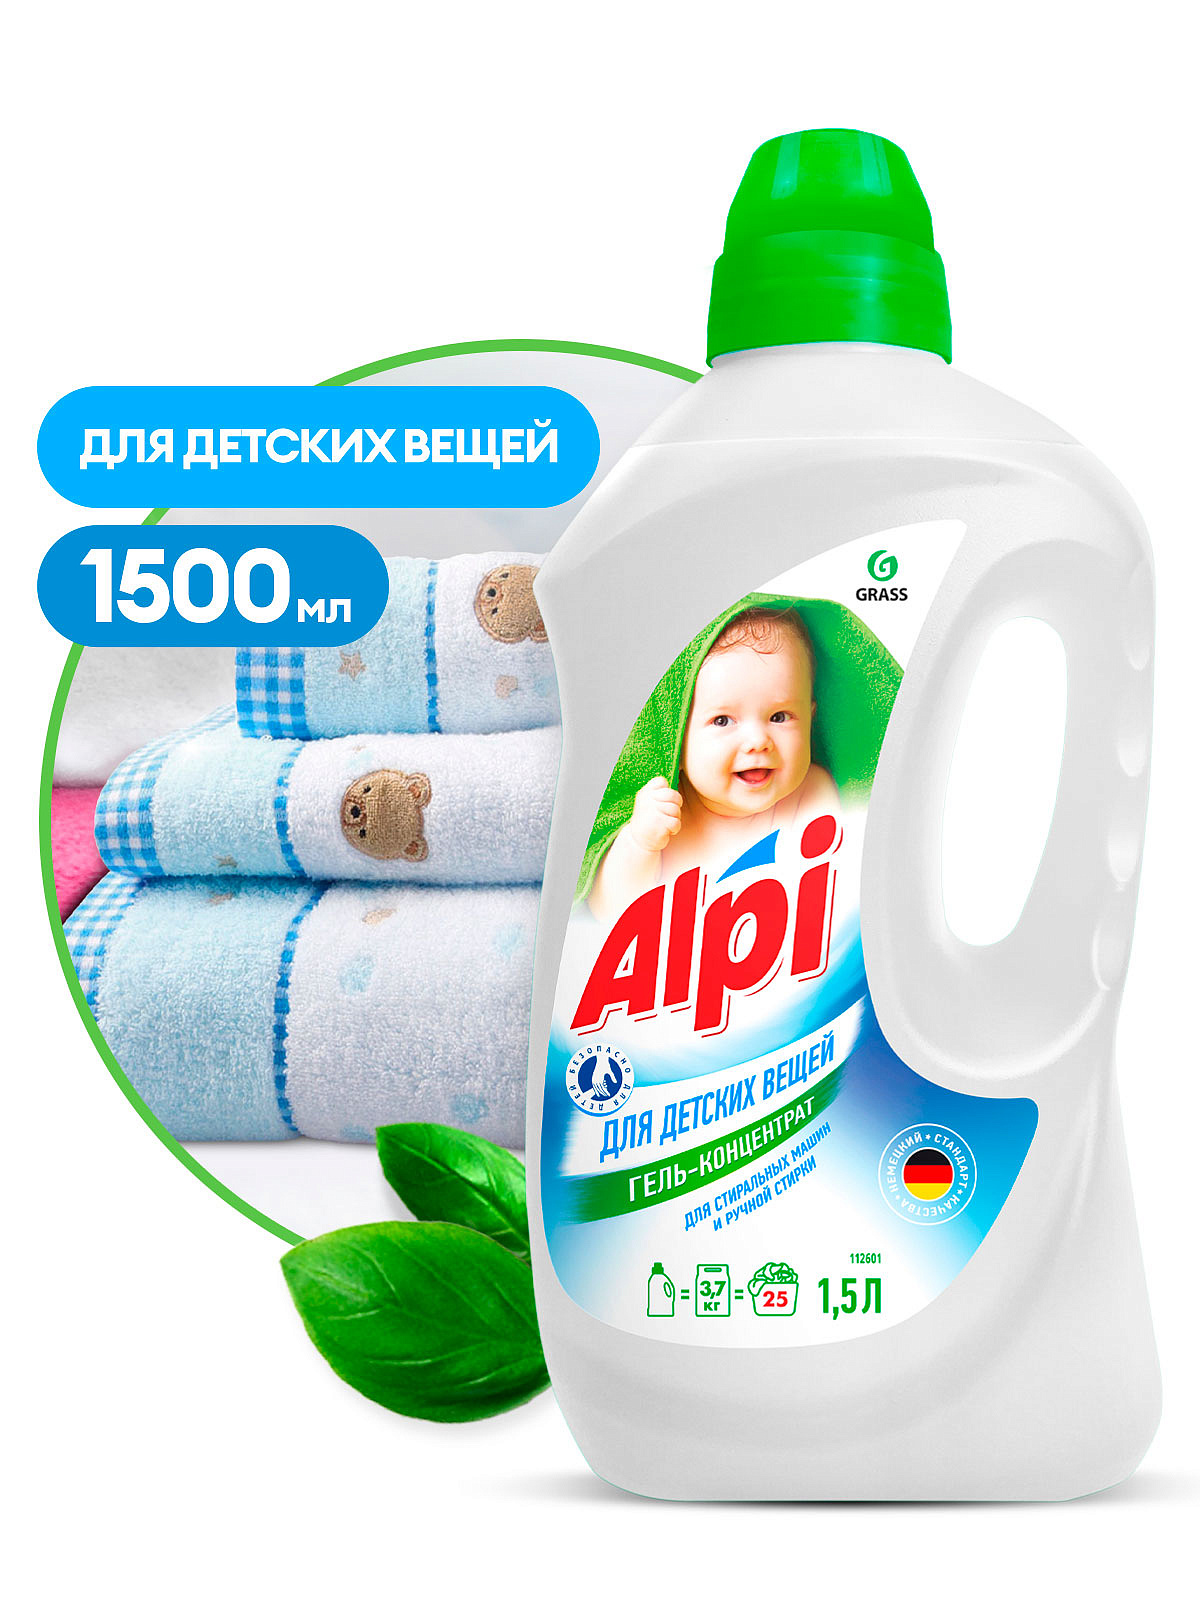 Гель-концентрат для детских вещей ALPI  (флакон 1,5л)